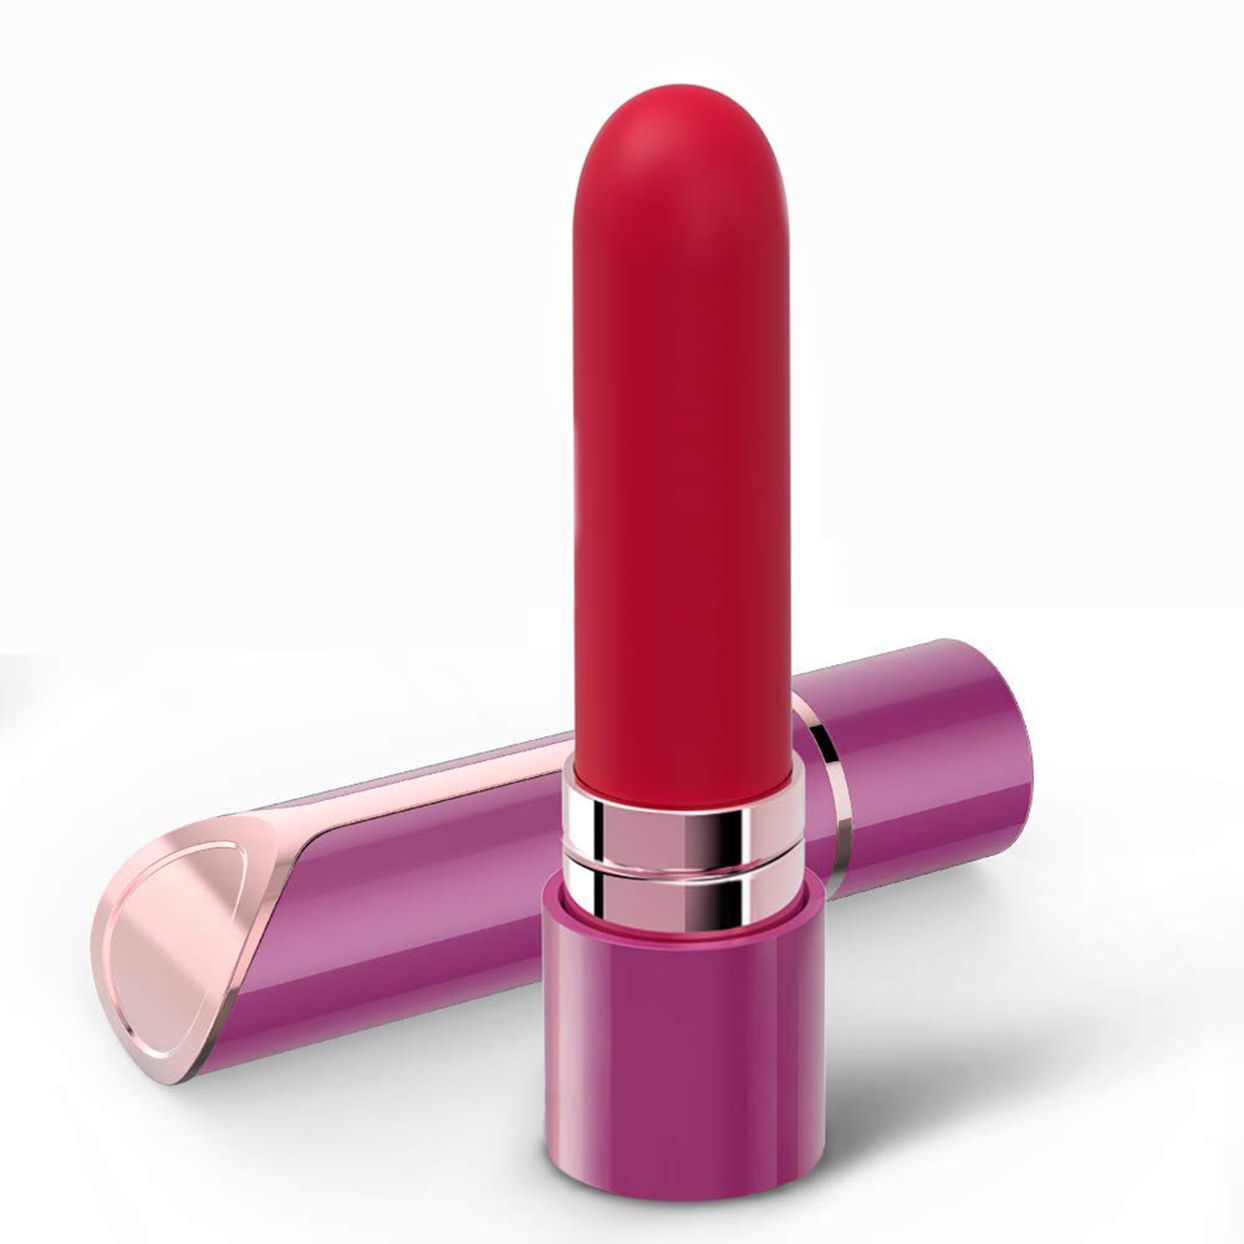 Bullet Vibrator for Clit Stimulation, Discreet Mini Lipstick